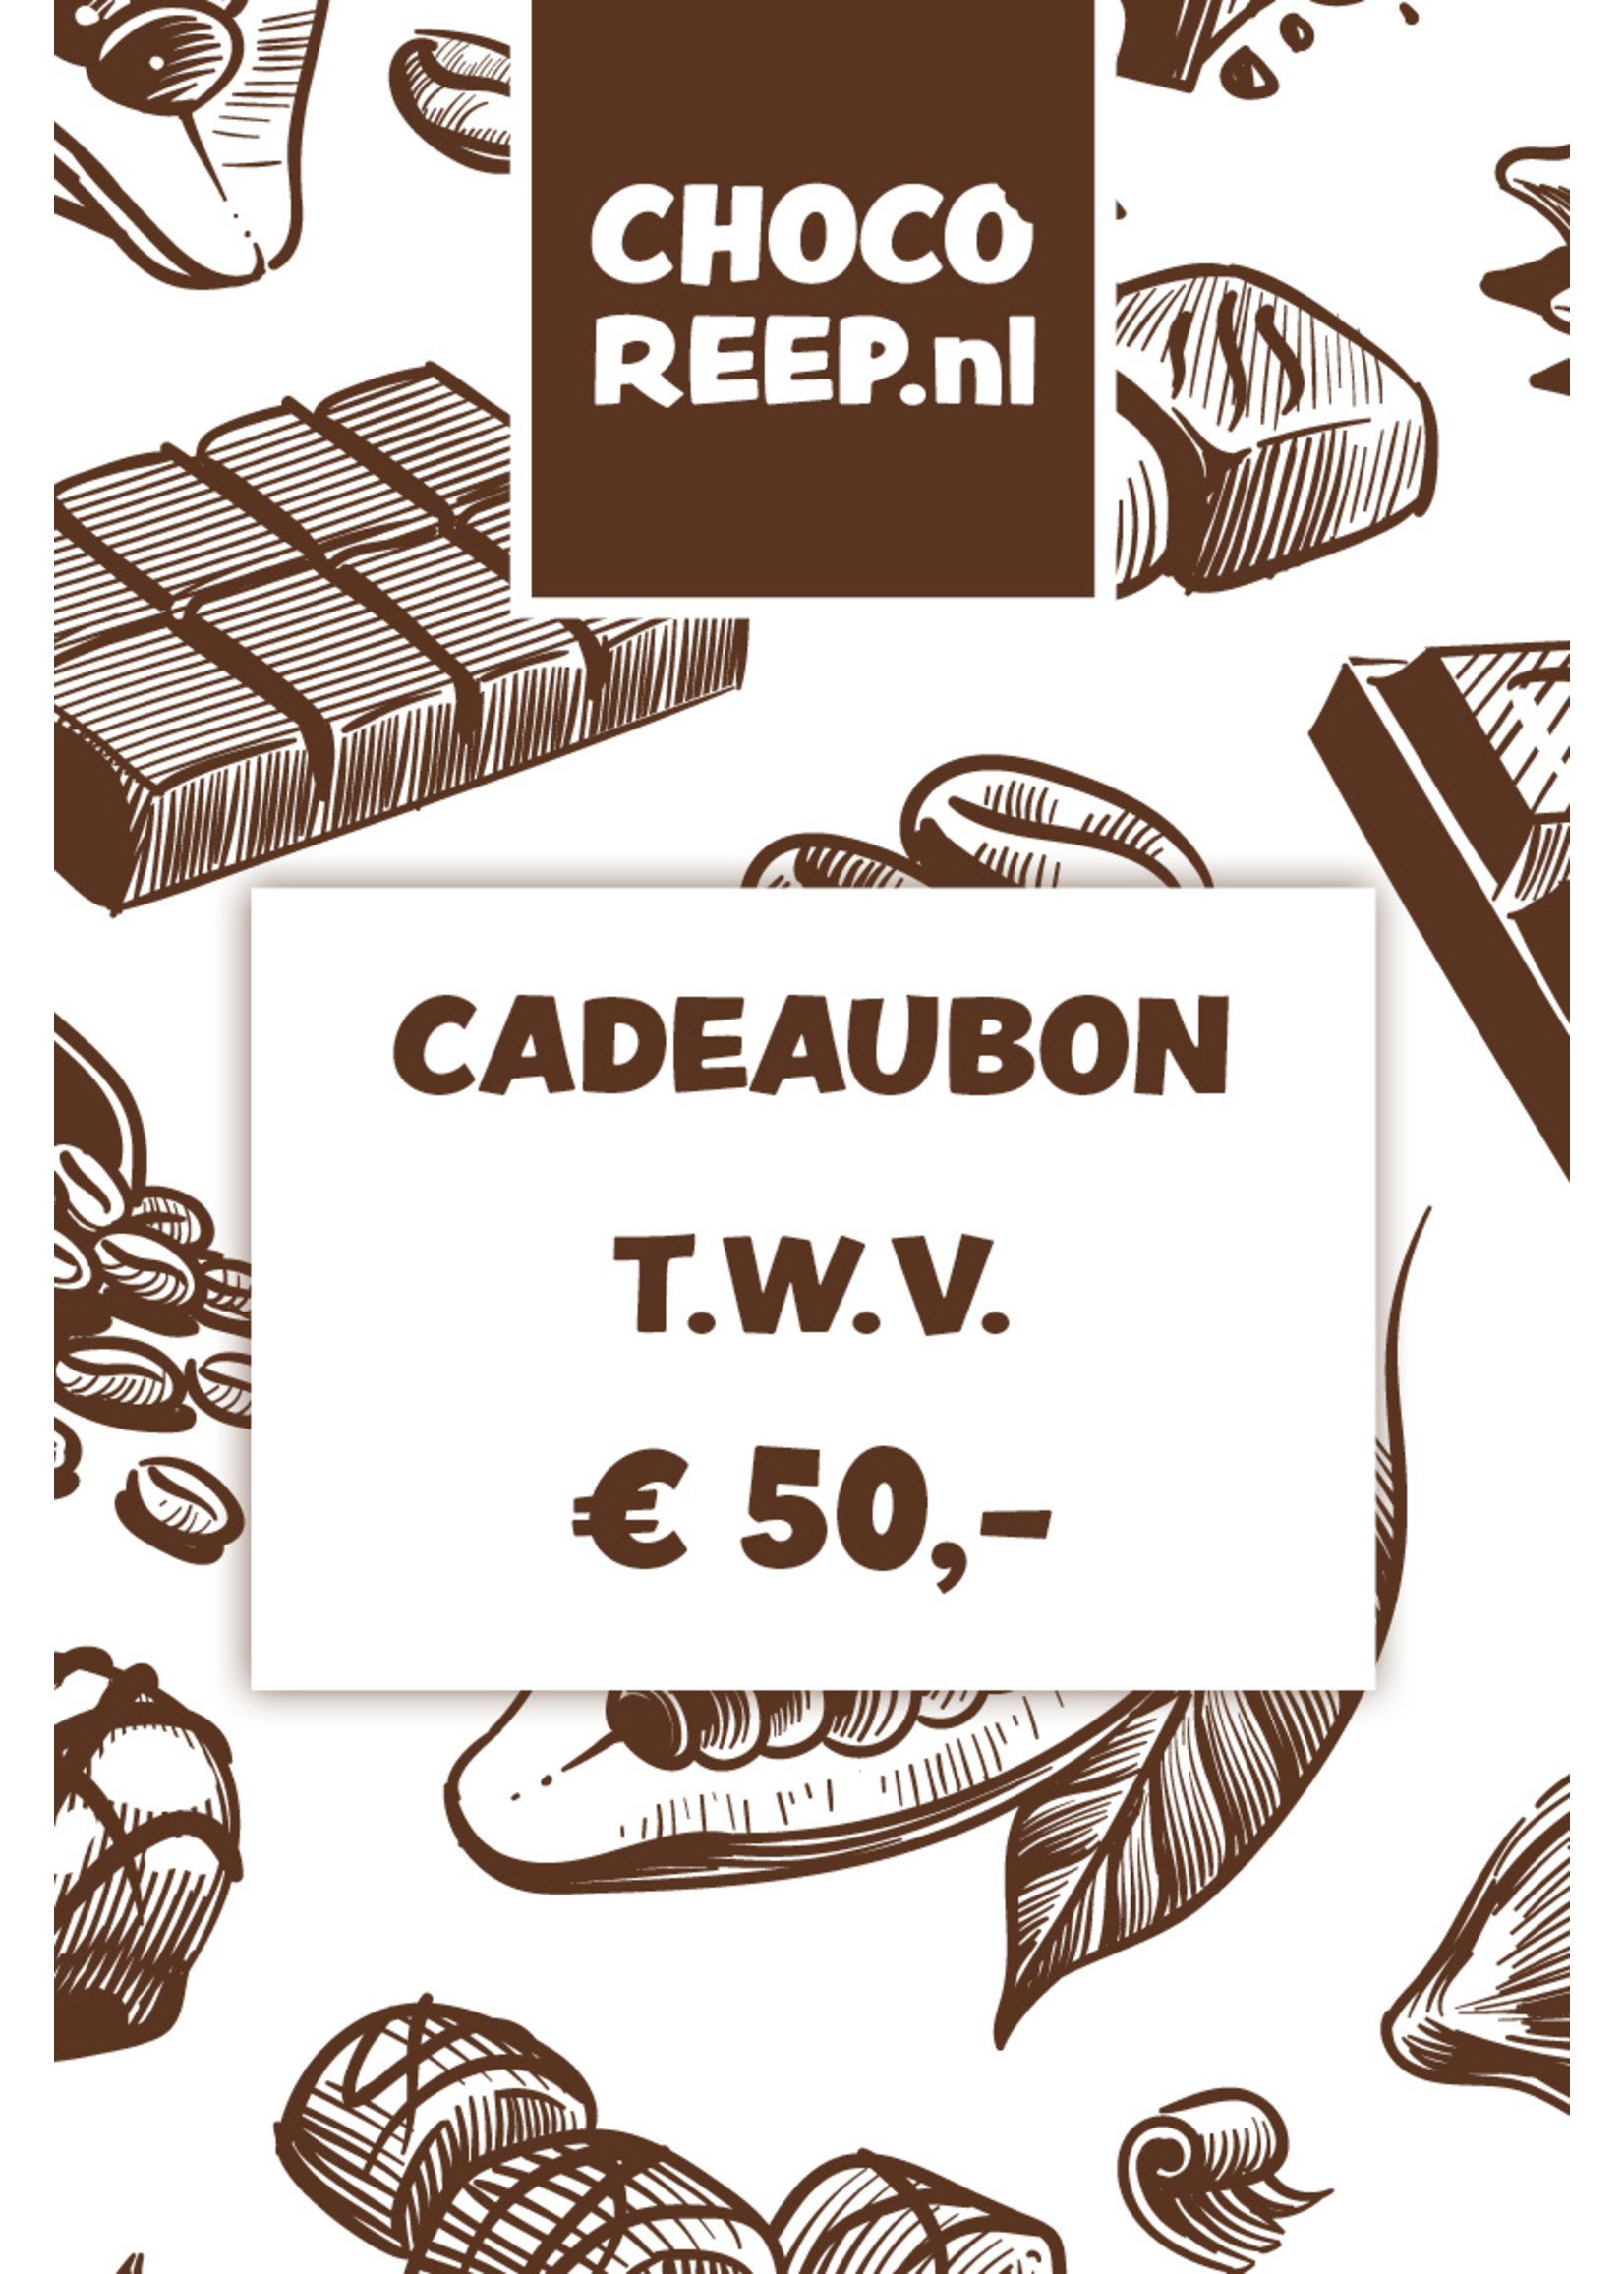 Cadeaubon t.w.v. € 50,-